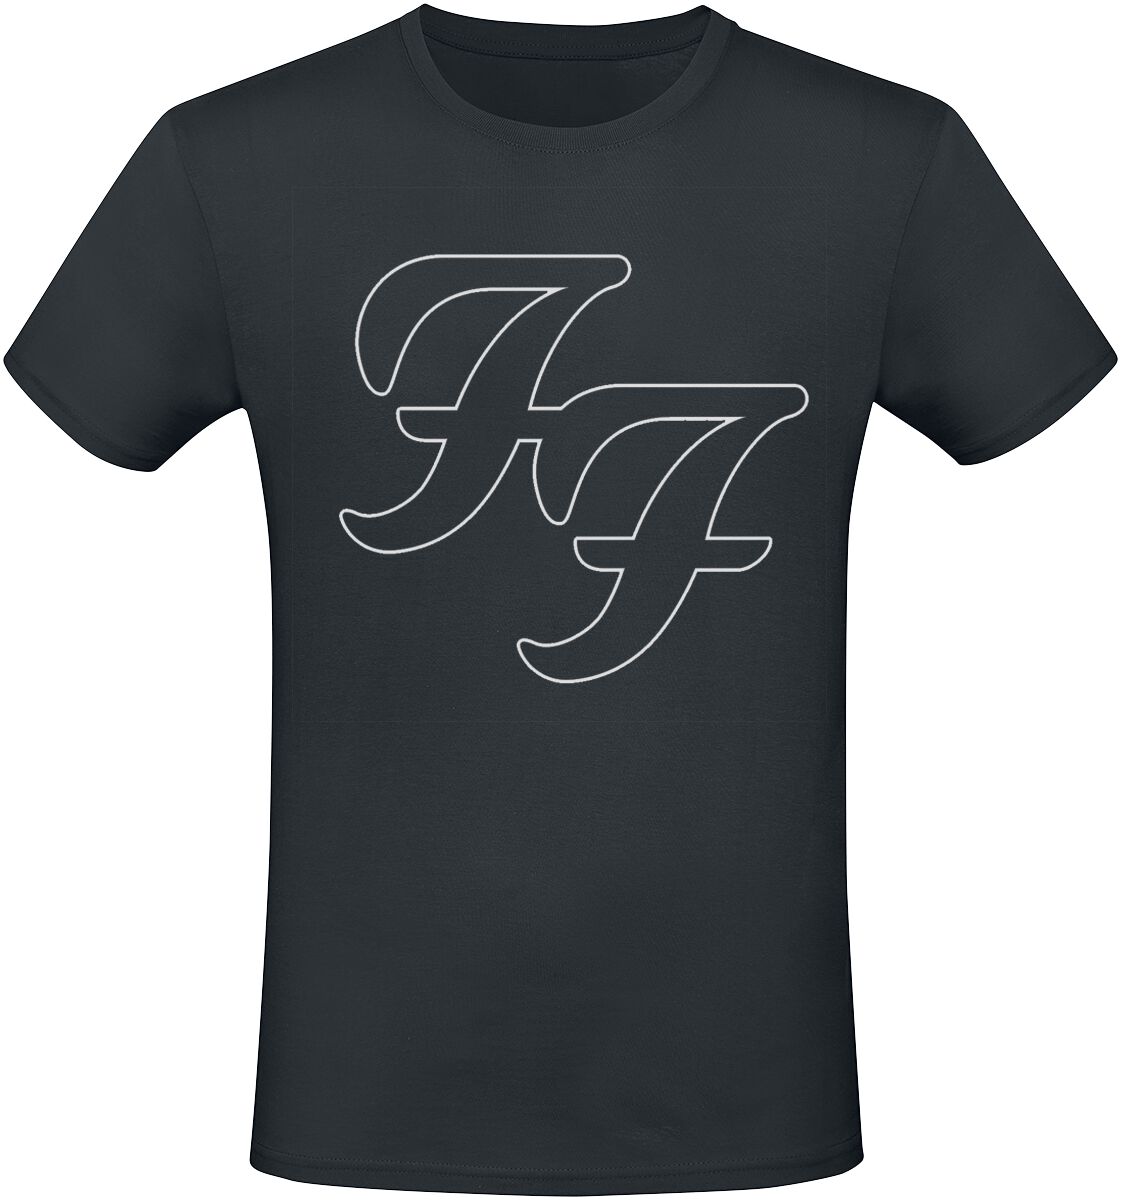 Foo Fighters T-Shirt - But Here We Are - S bis 3XL - für Männer - Größe M - schwarz  - Lizenziertes Merchandise!